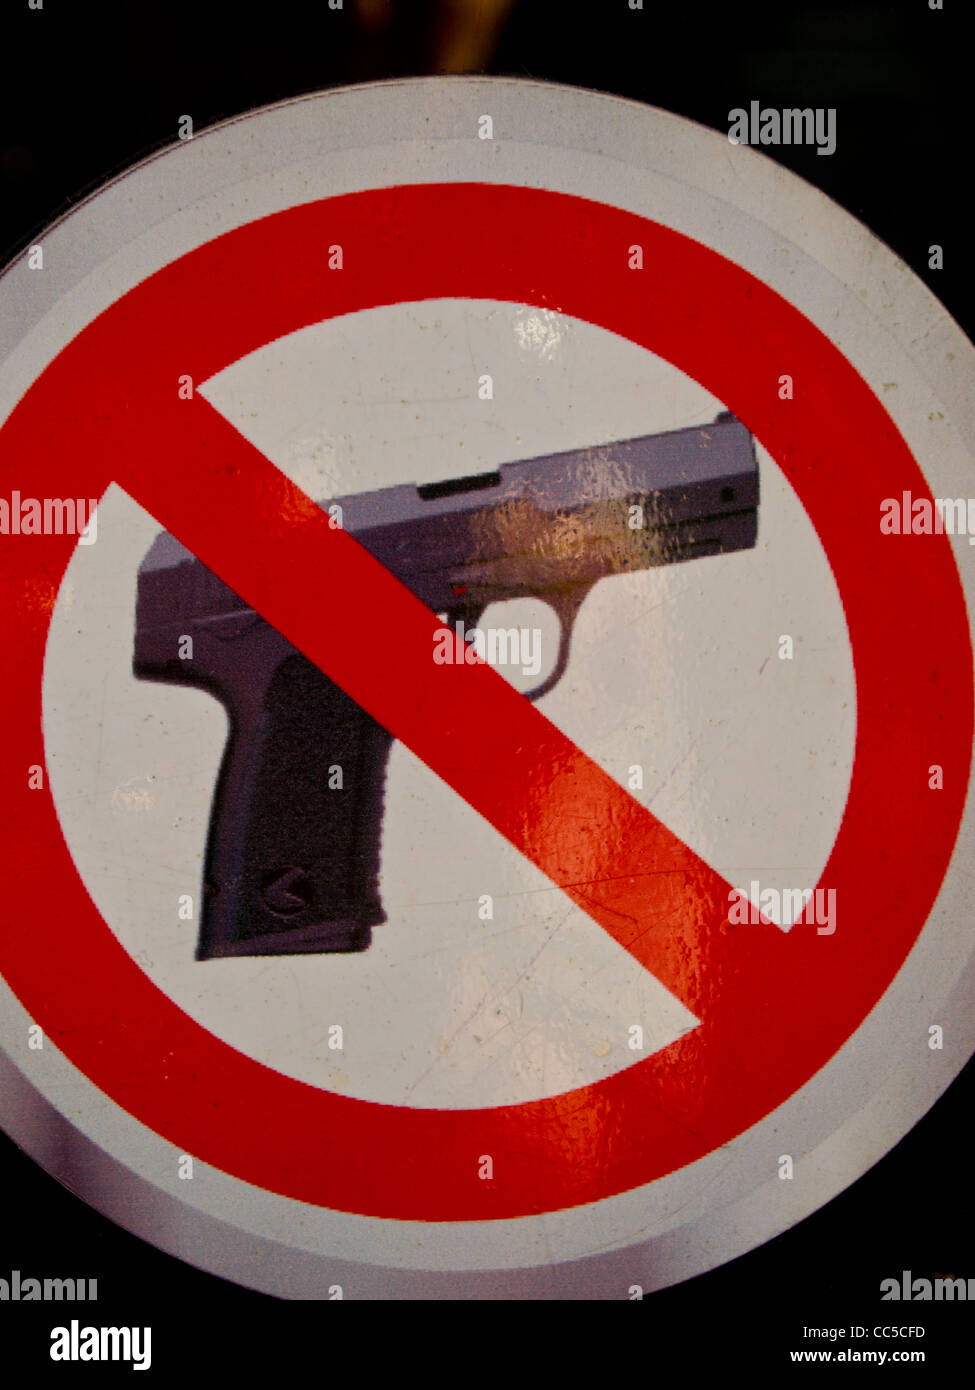 Armes interdites / Munitions prohibées / Accessoires d'armes interdits